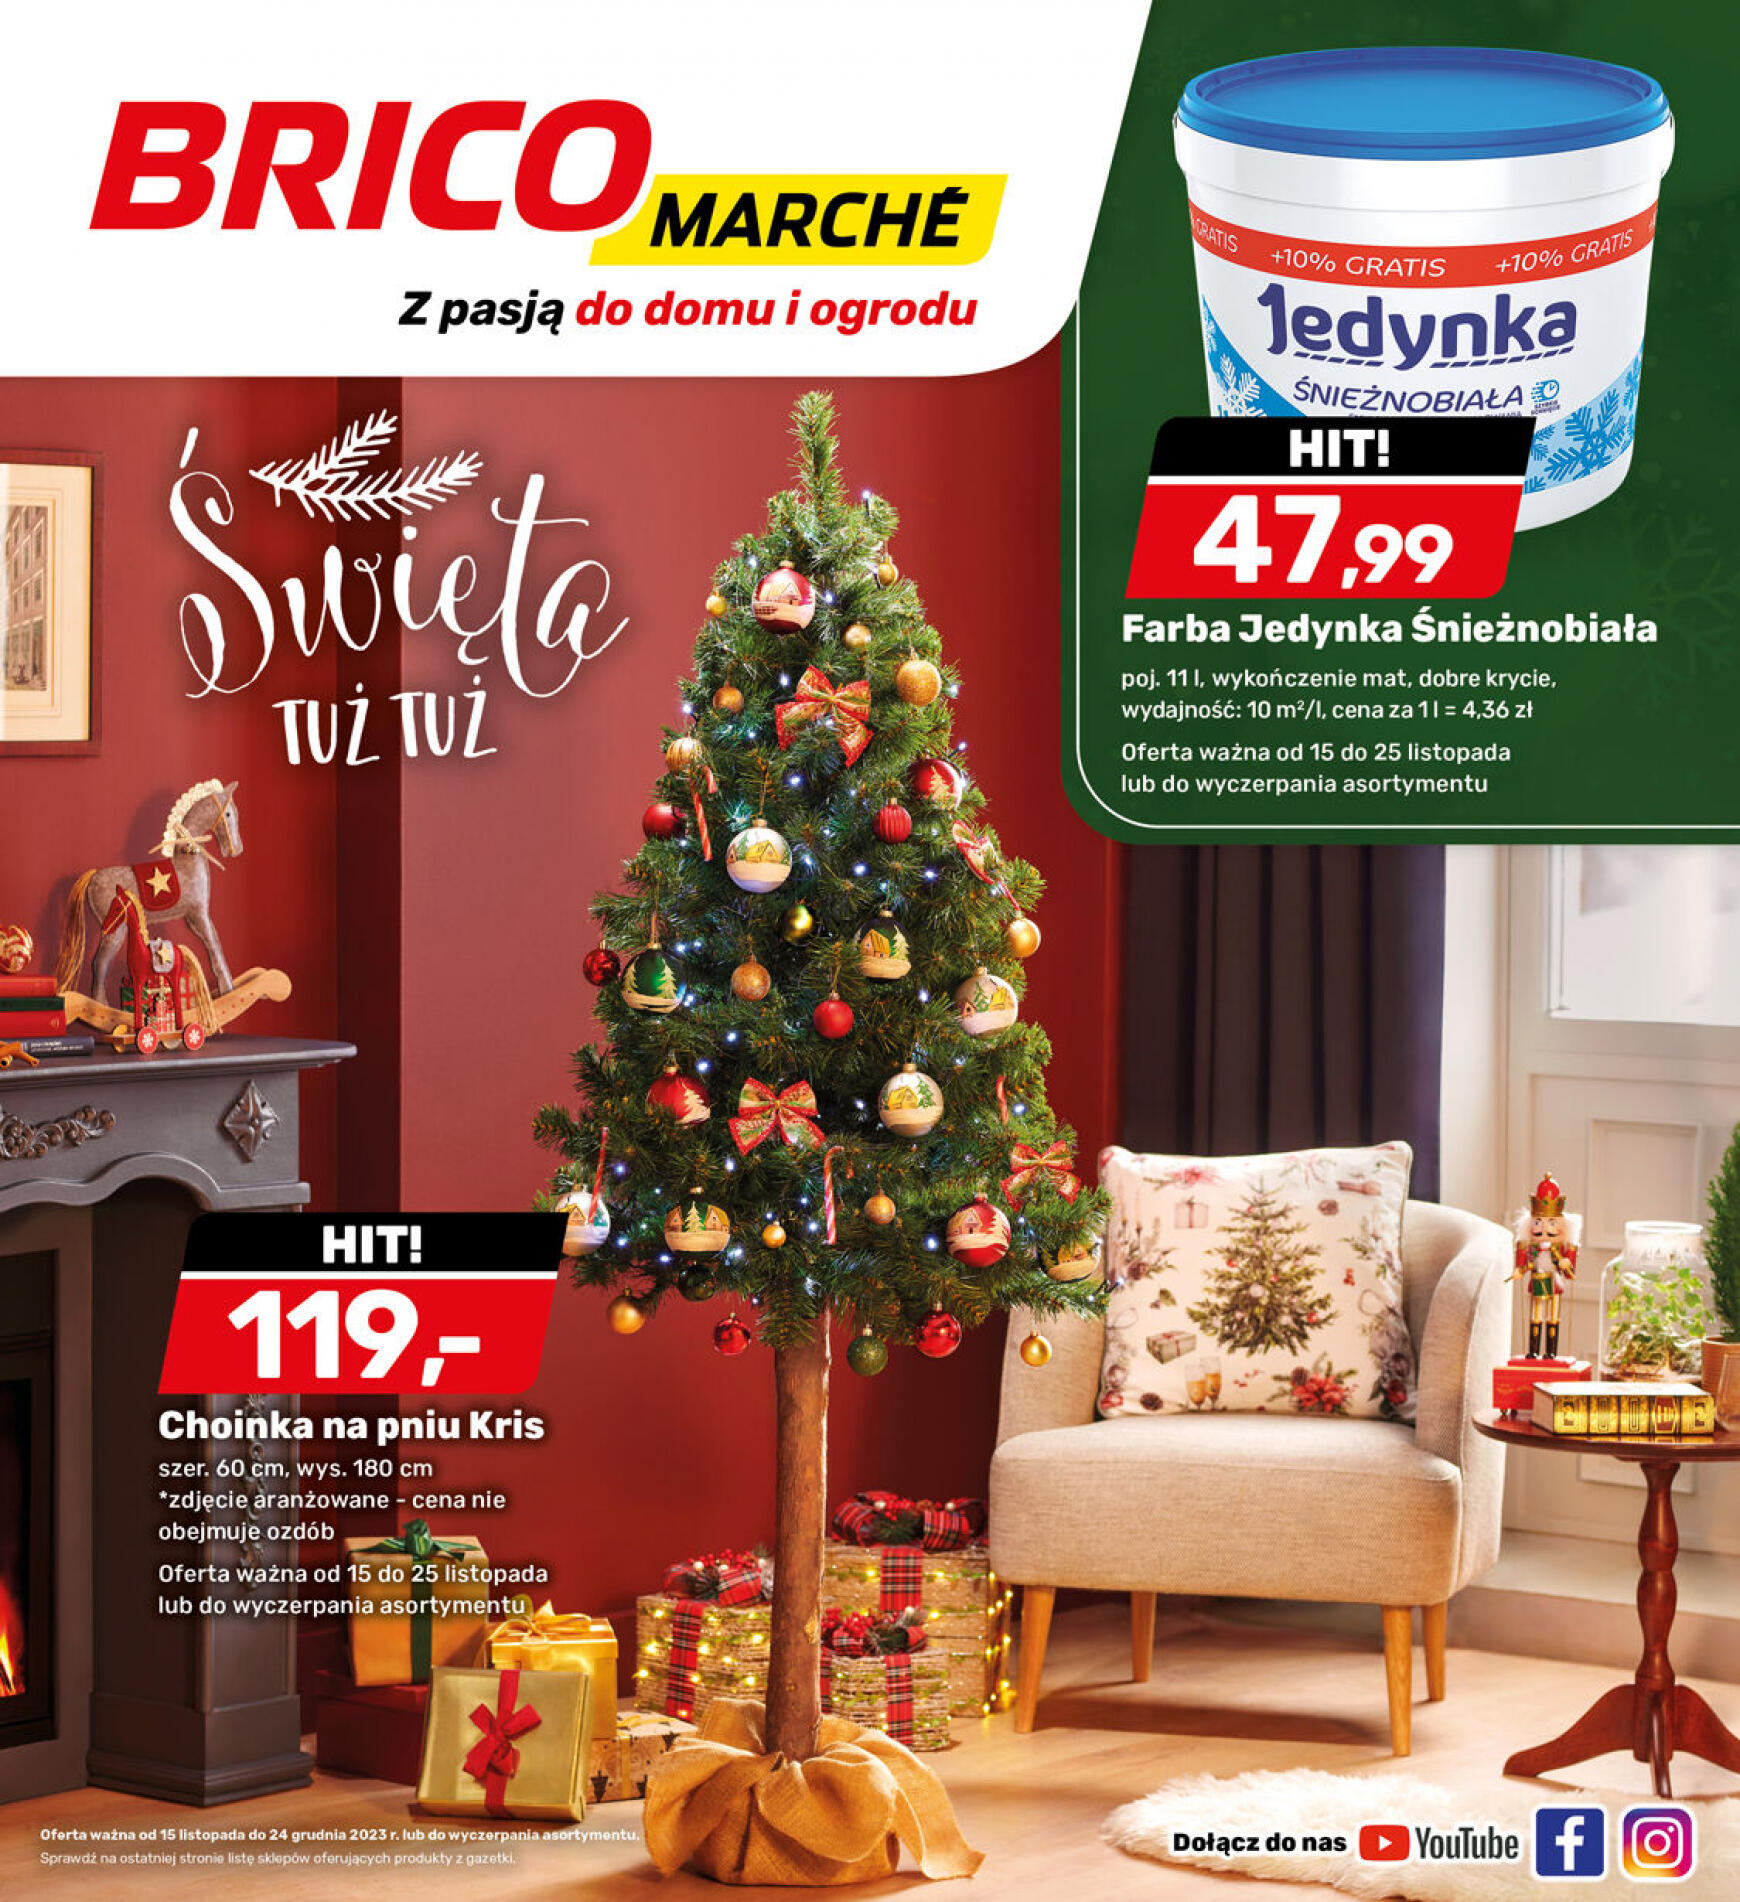 brico-marche - - Bricomarche - page: 7